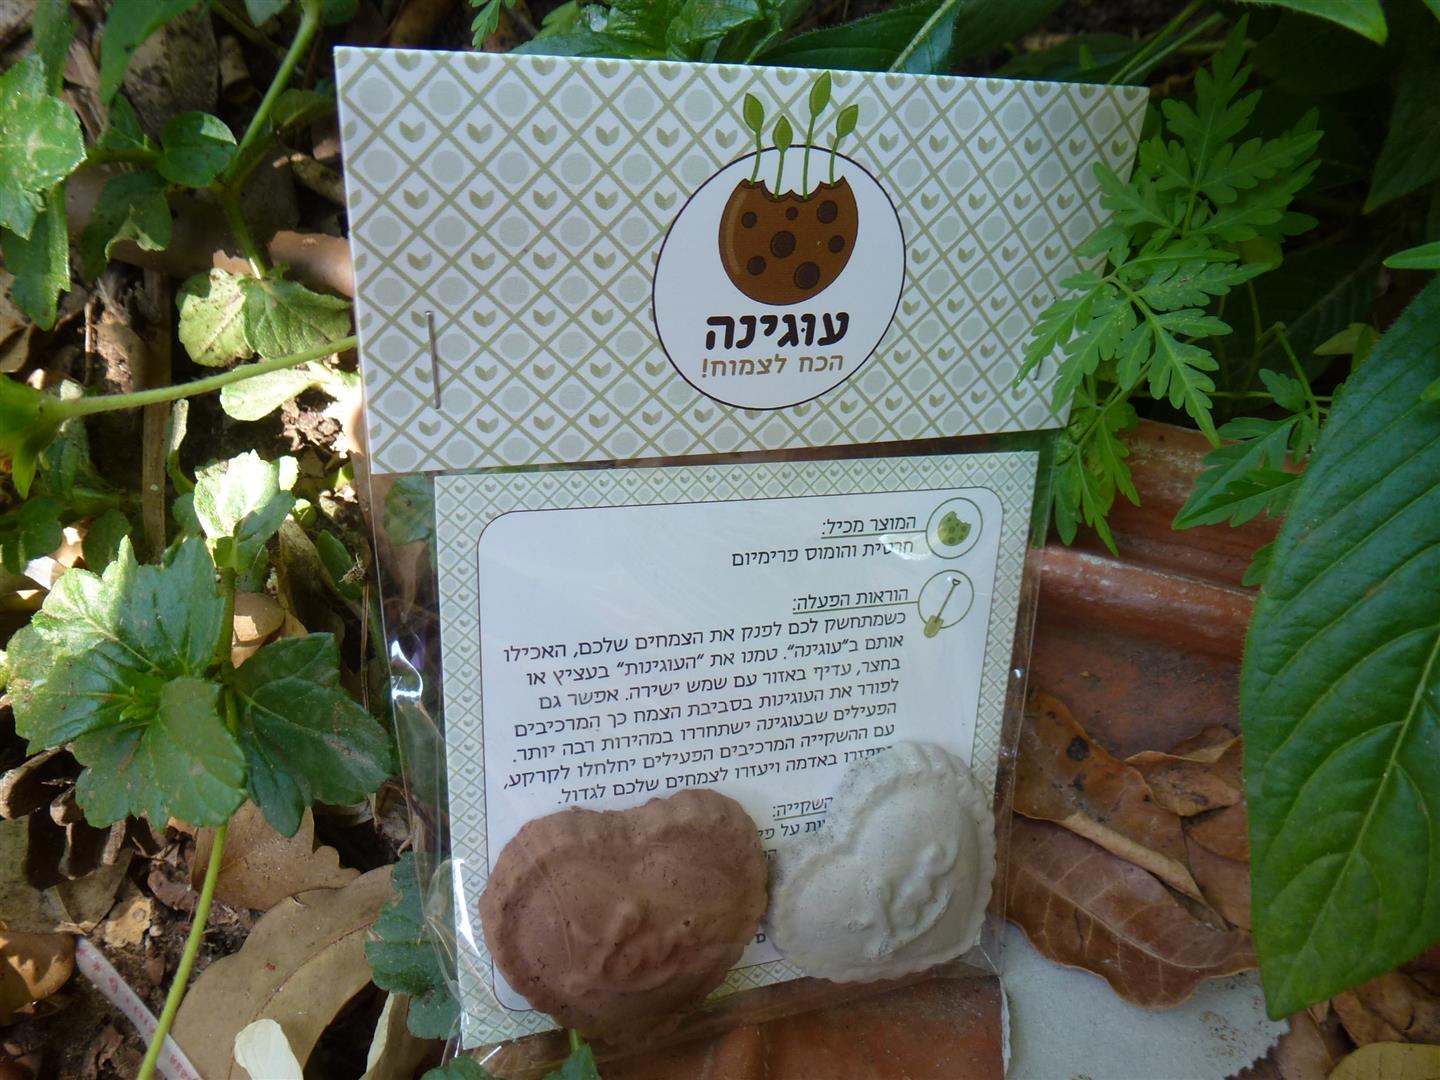 מוצר -עוגינה- המיוצר במקום ומיועד למכירה כסיוע לגידול צמחים וסיוע לקהילה